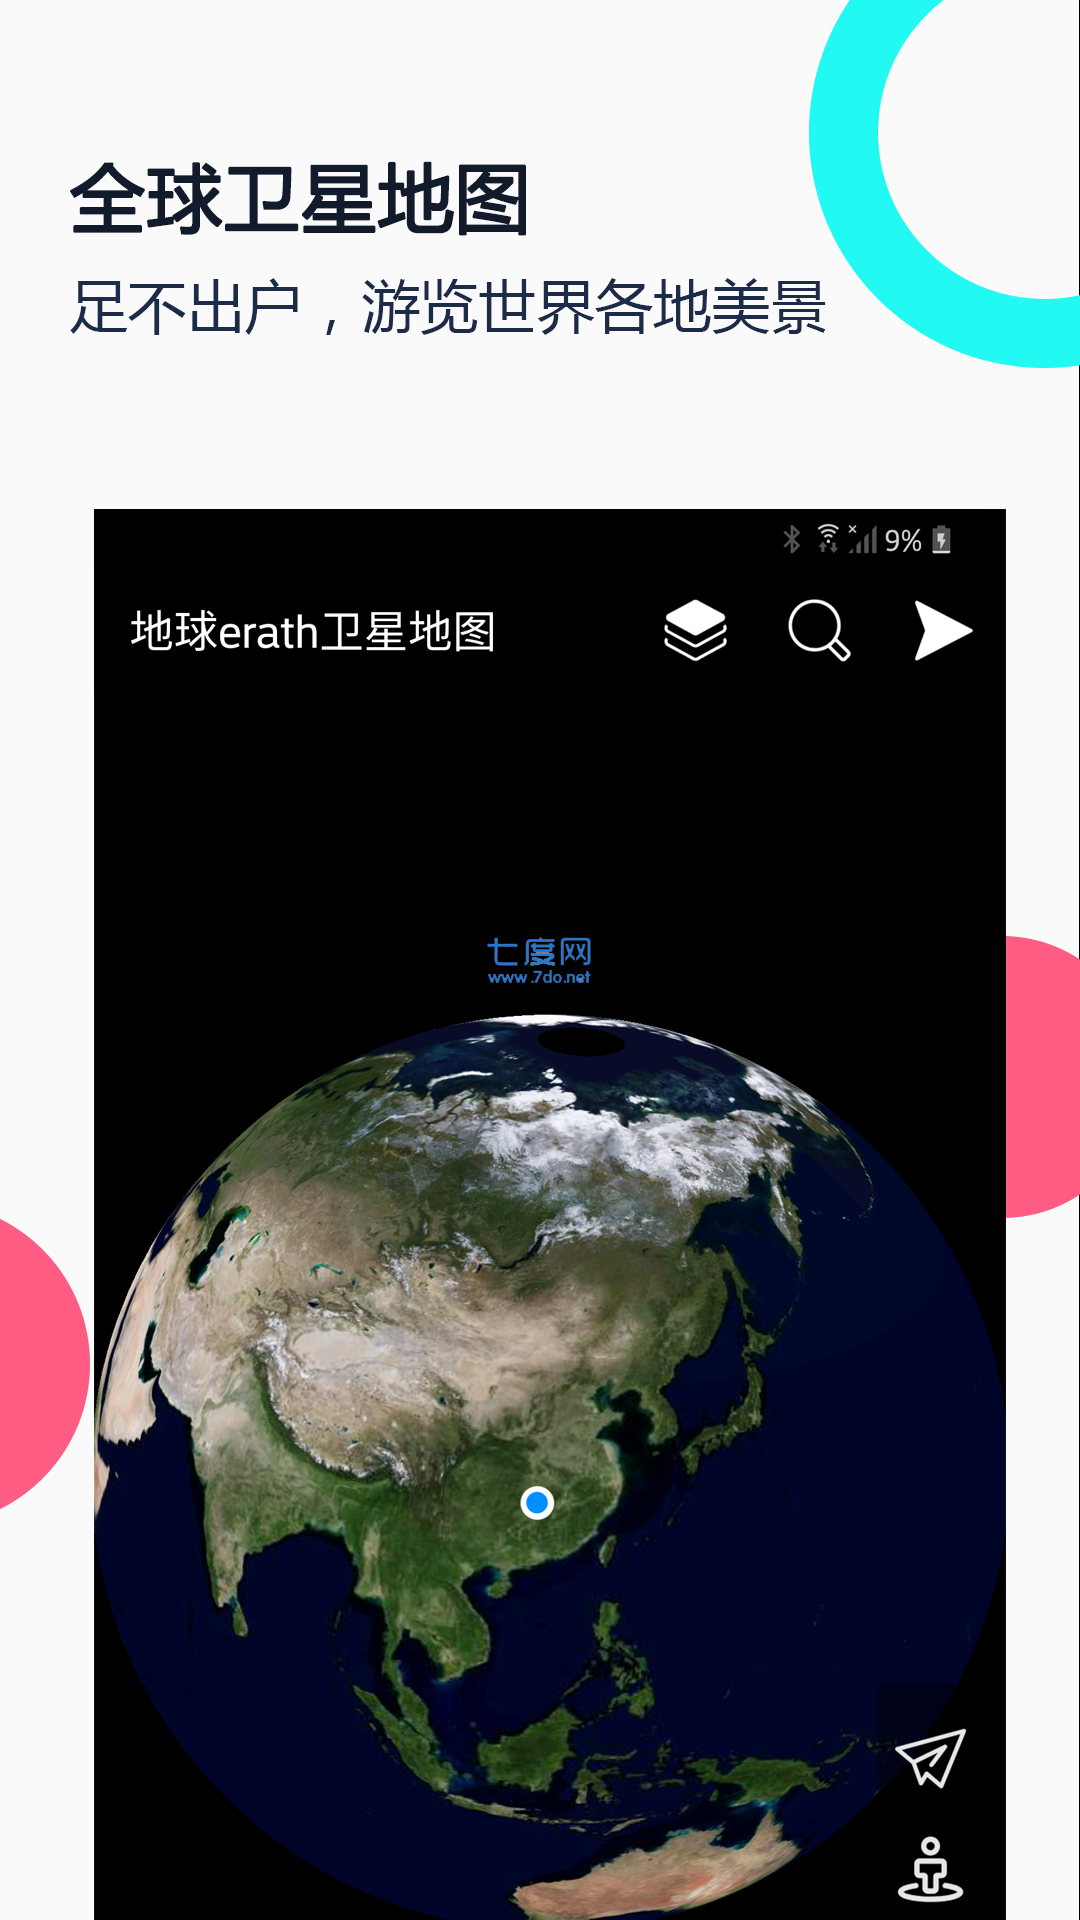 google earth安卓版是一款高清卫星地图定位软件,在手机上面可以看到